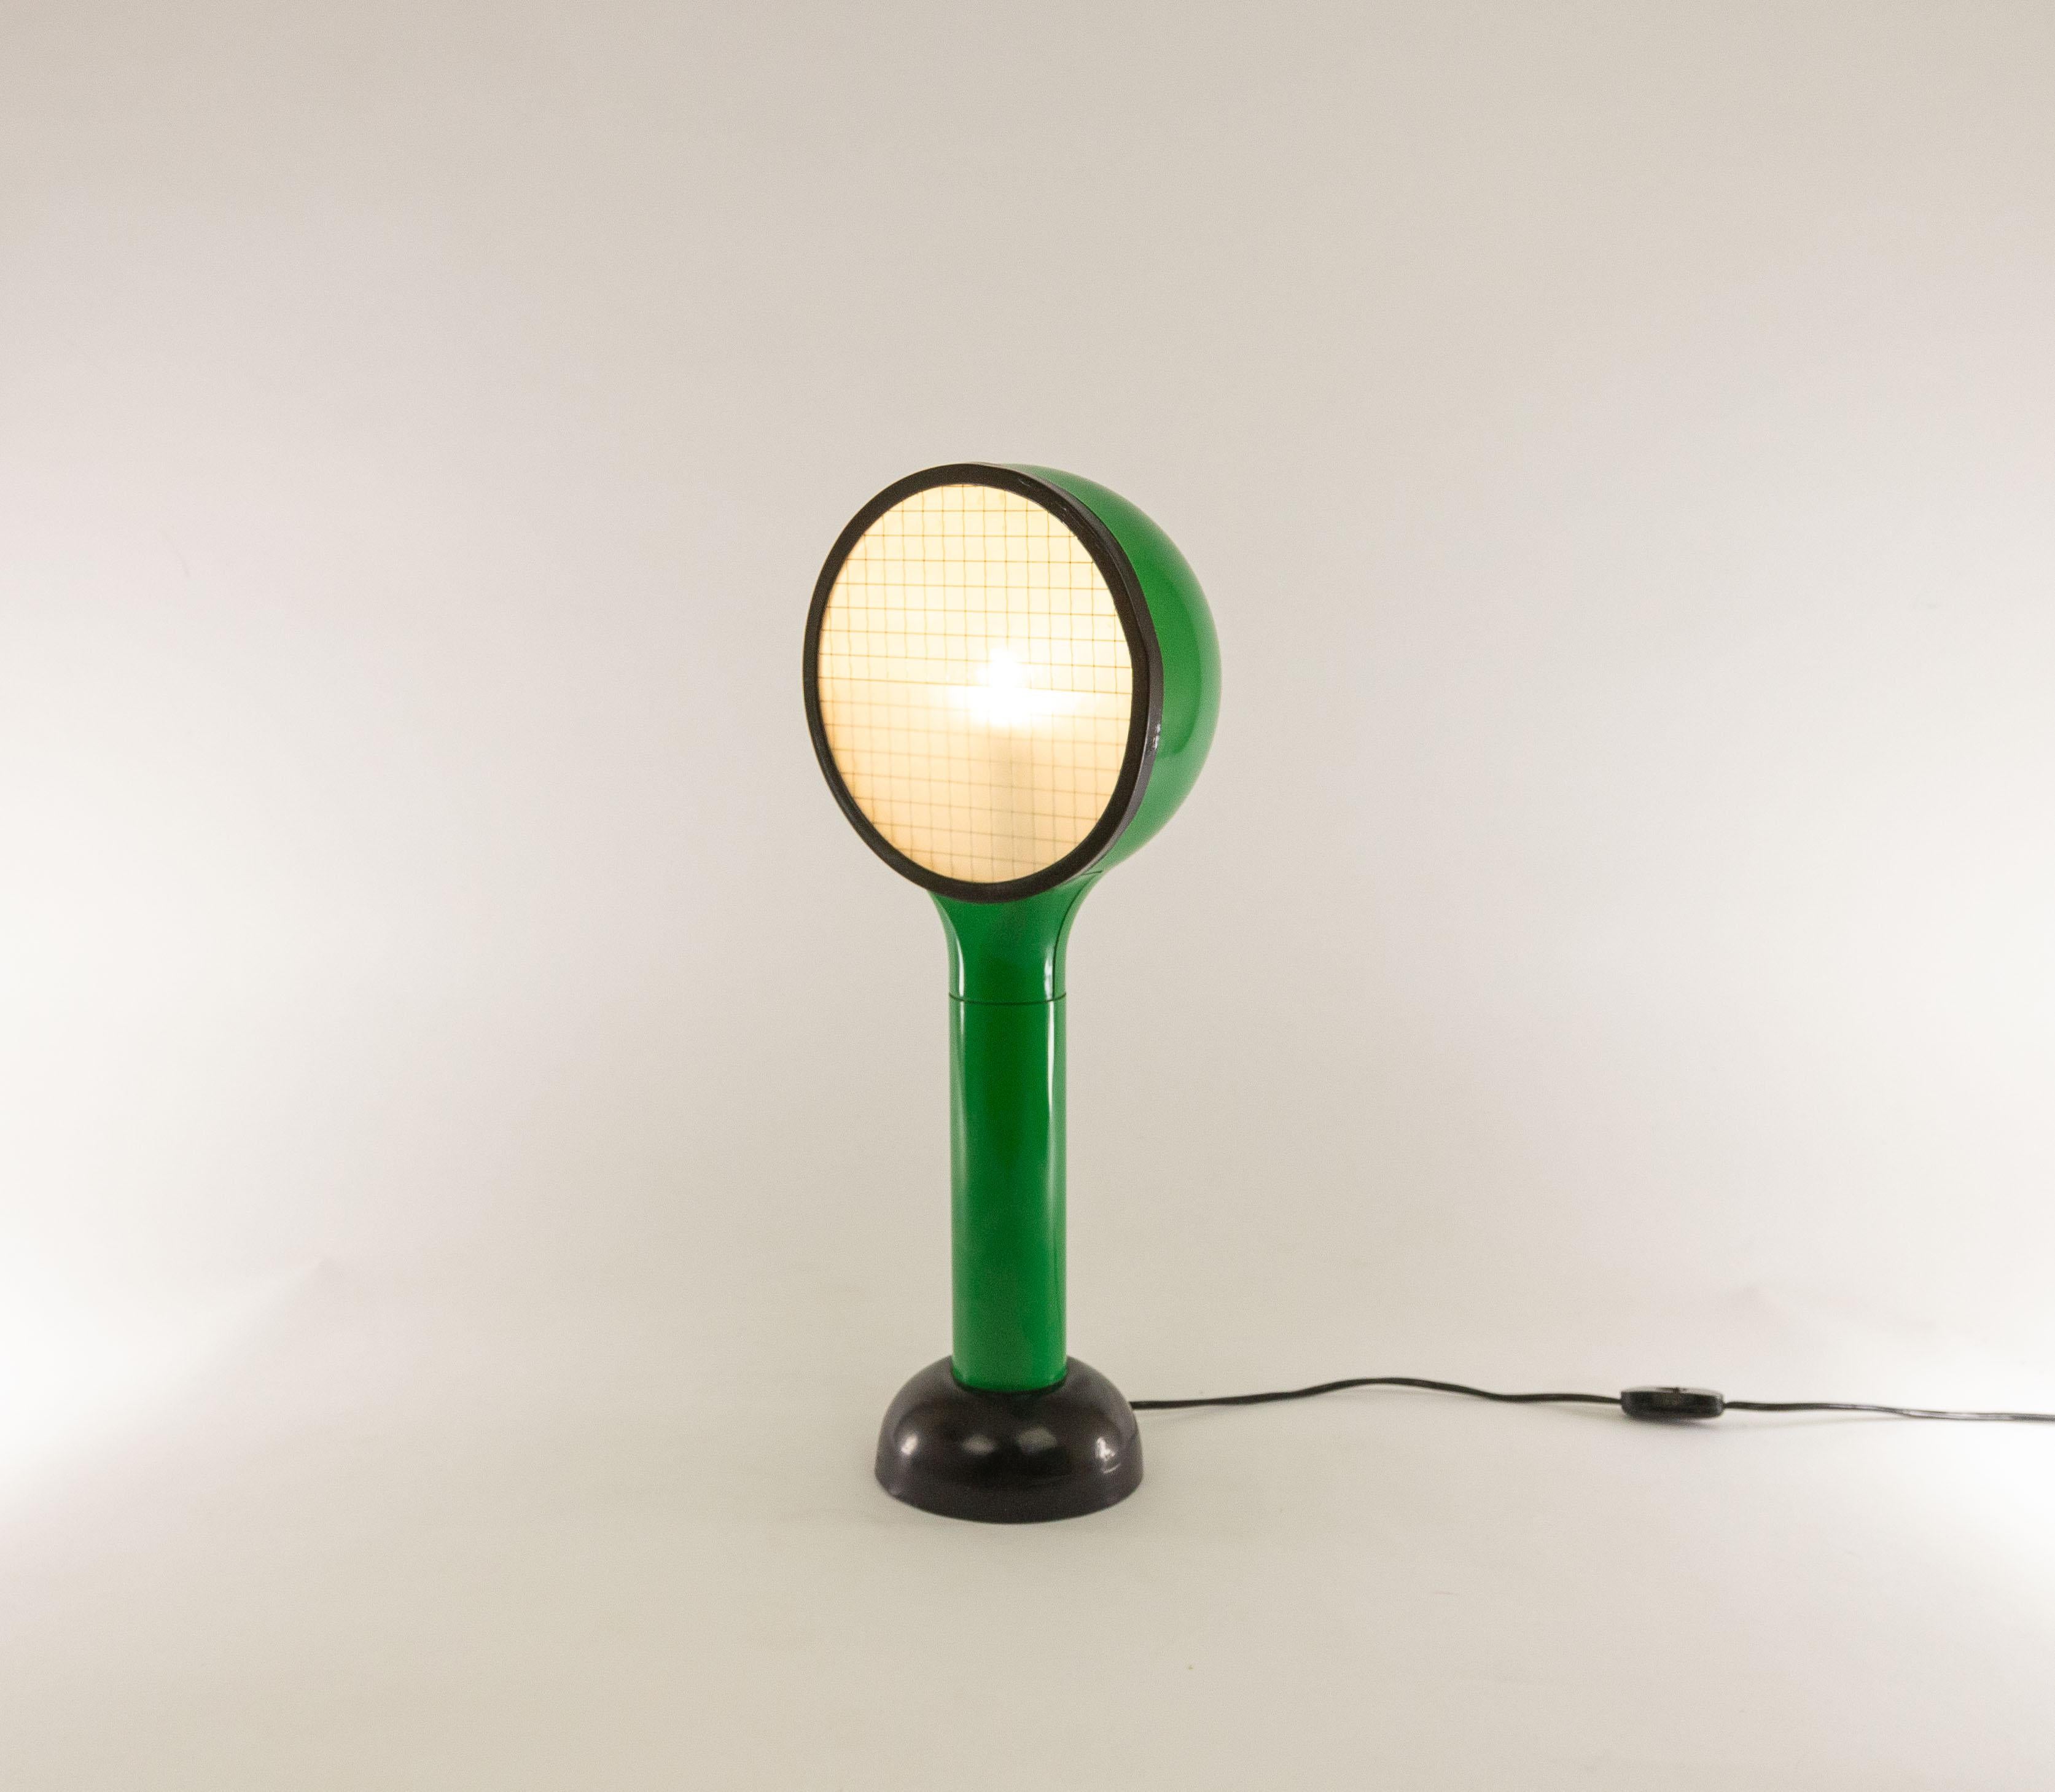 Lampe de table drive conçue par Adalberto Dal Lago et Adam Thiani en 1974. Il a été fabriqué par Francesconi et comporte une étiquette originale sur sa face inférieure.

Ce modèle fait partie d'une série d'appliques et de lampes de table. Ils sont